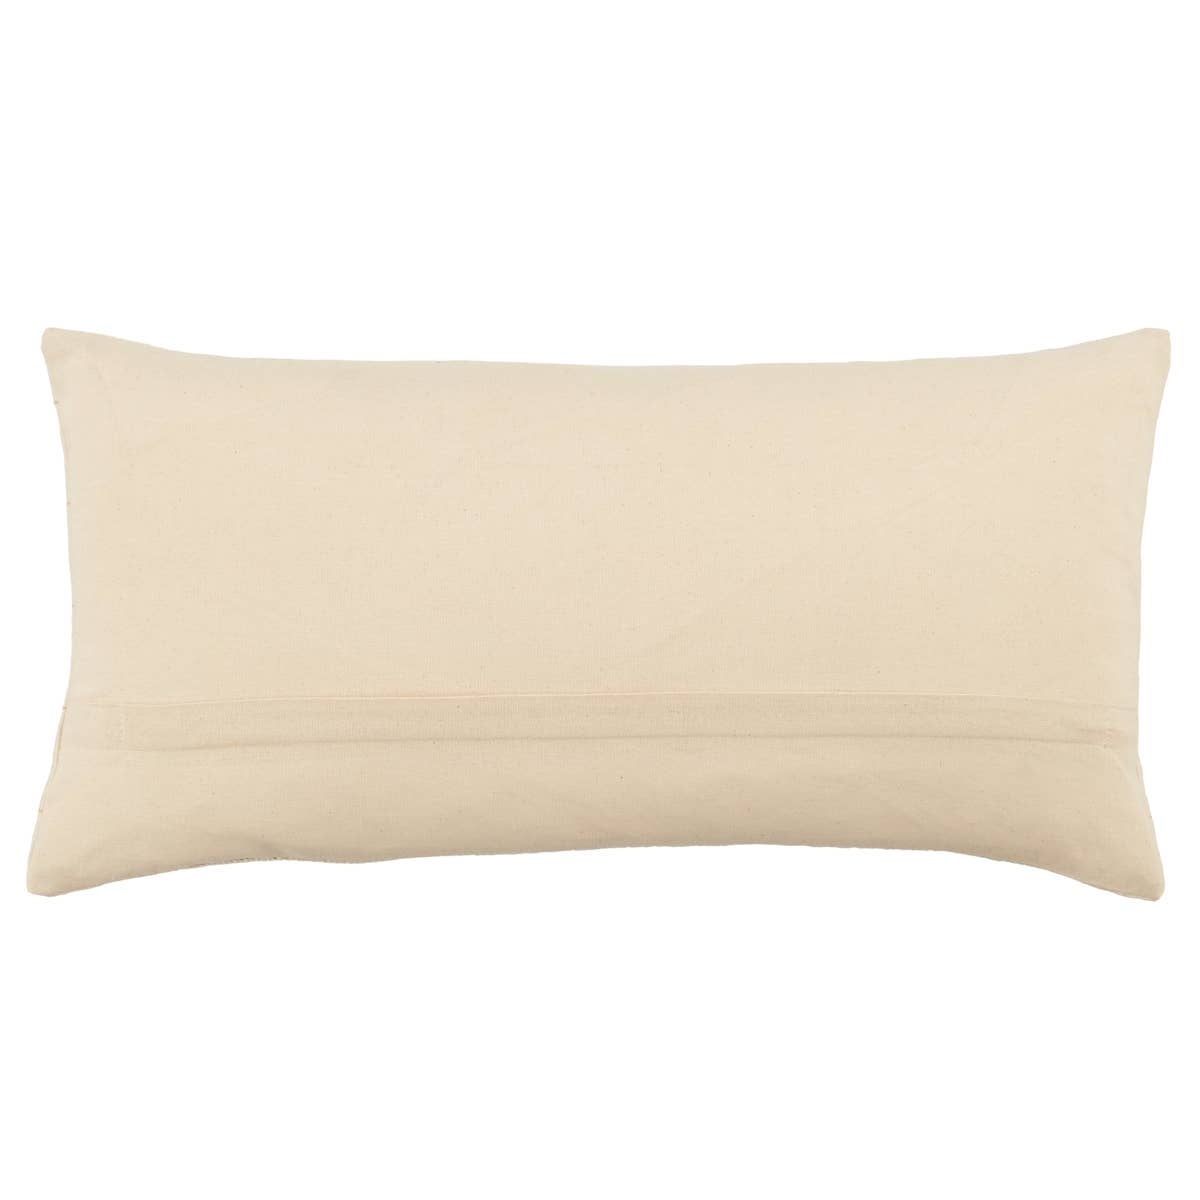 Milak Lumbar Pillow, Beige, 21" x 13" - Image 2